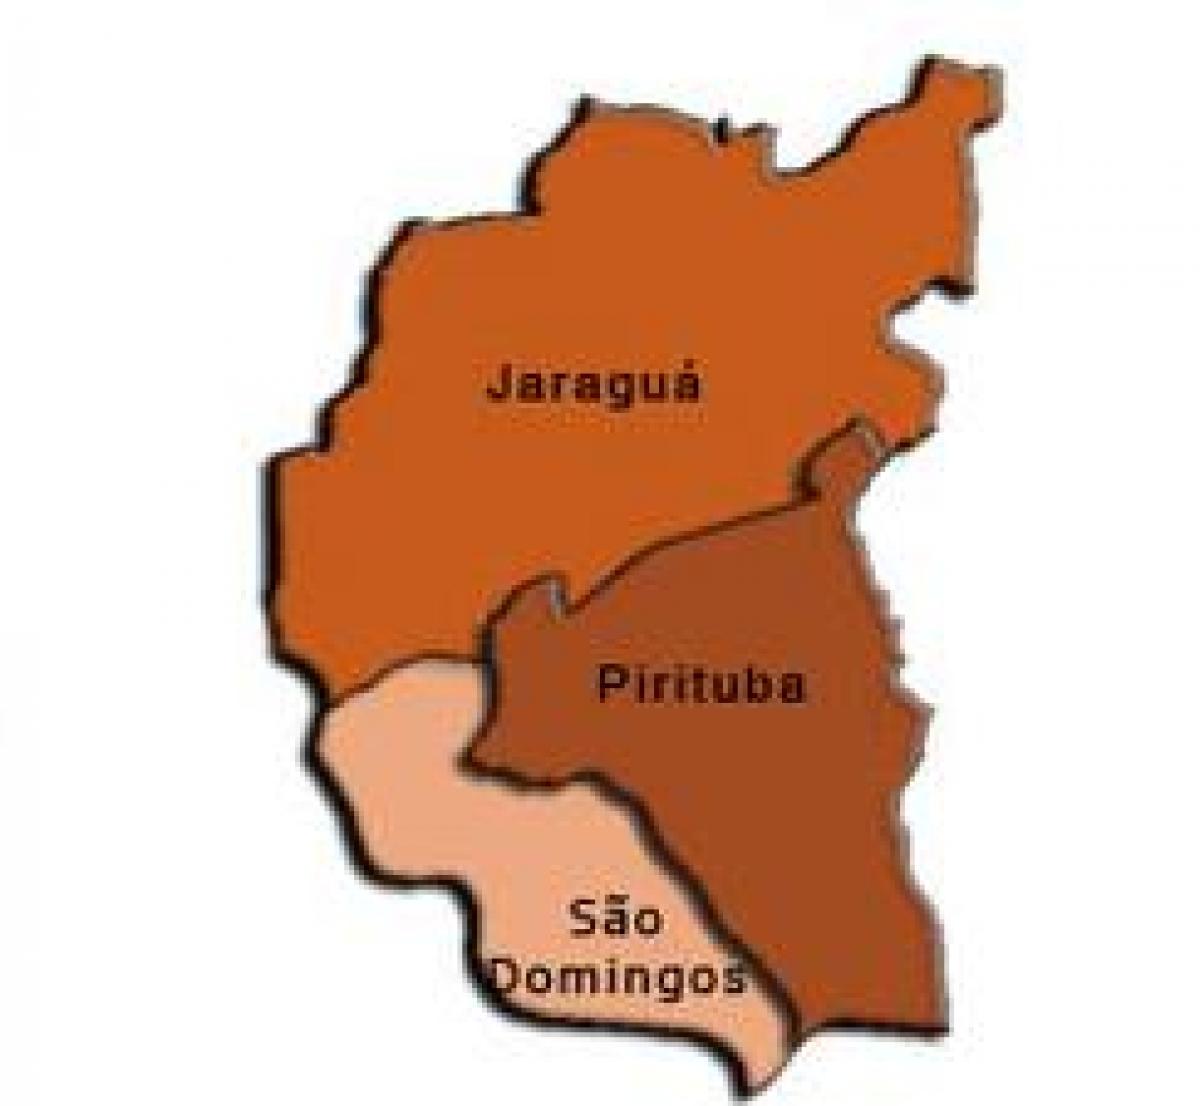 מפה של Pirituba-Jaraguá תת-פריפקטורה